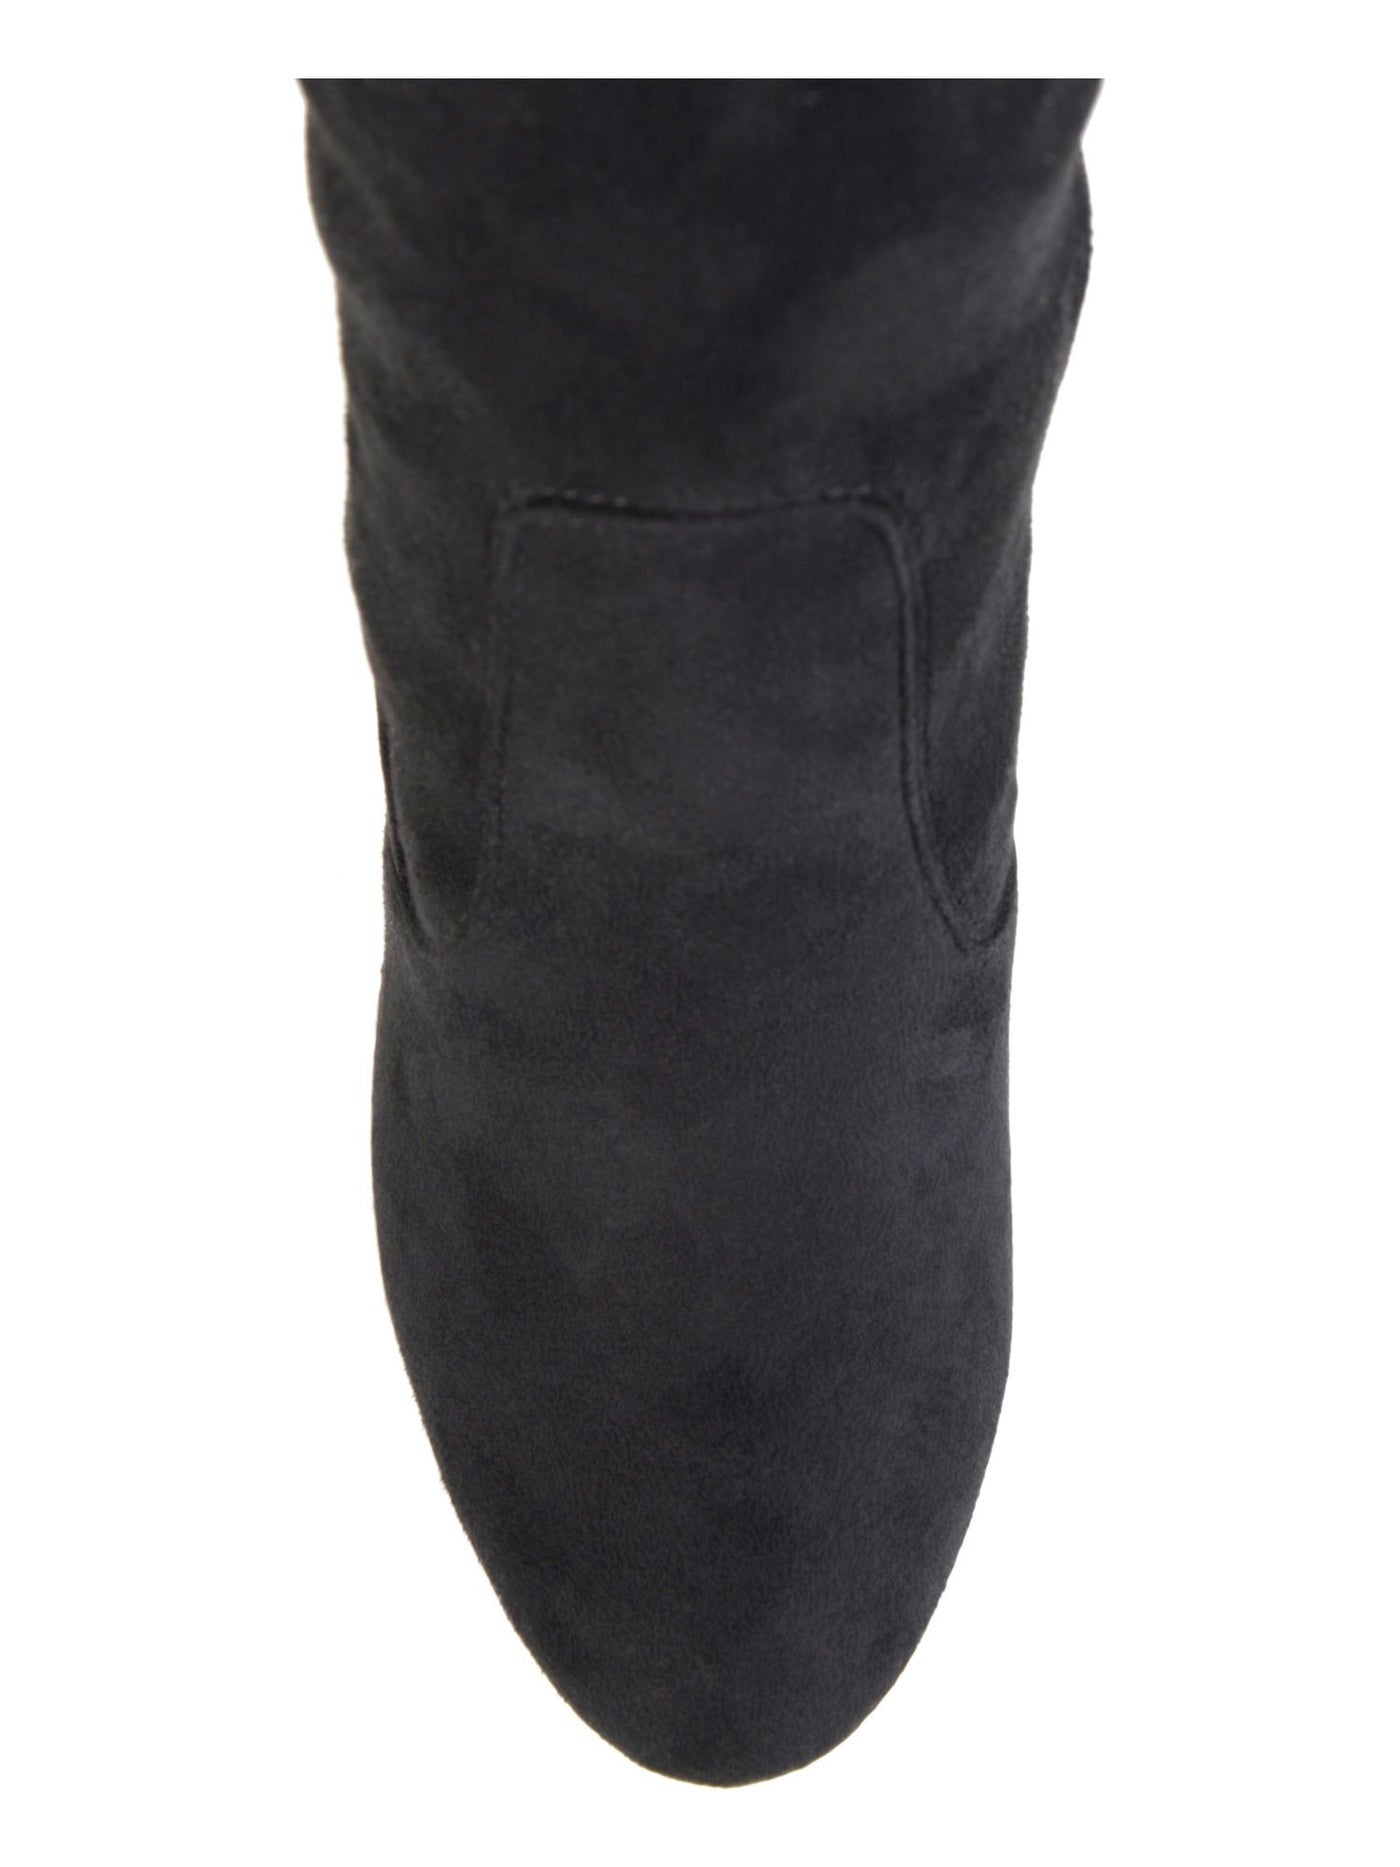 JOURNEE COLLECTION Womens Black Comfort Maya Almond Toe Block Heel Zip-Up Heeled Boots 9 M